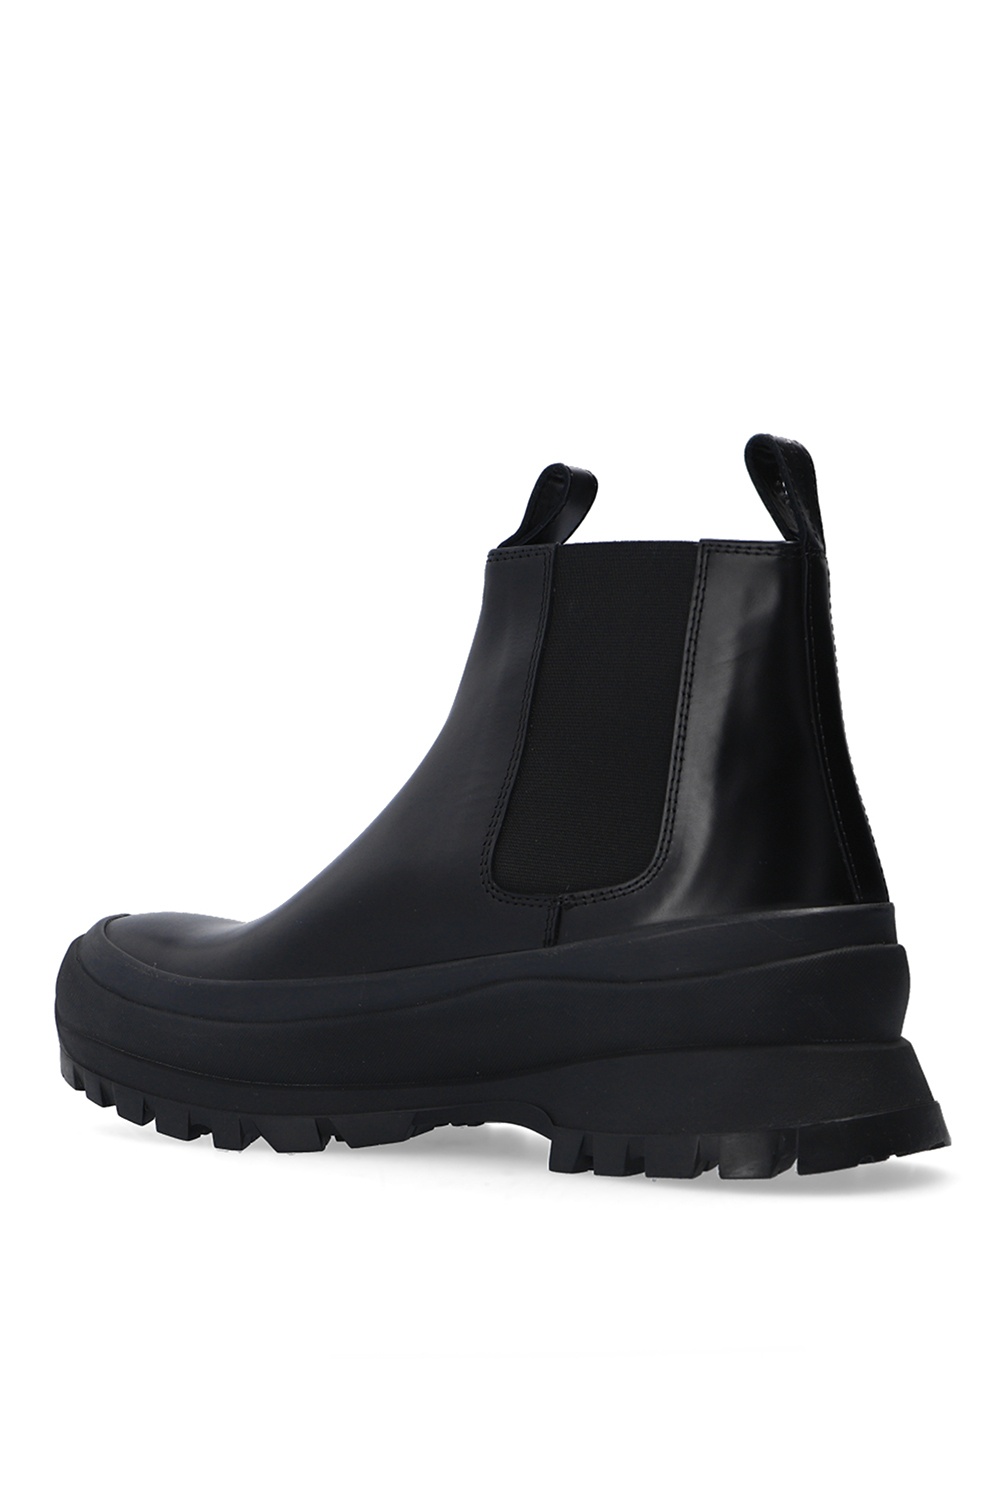 JIL SANDER Leather Chelsea boots | Men's Shoes | IetpShops